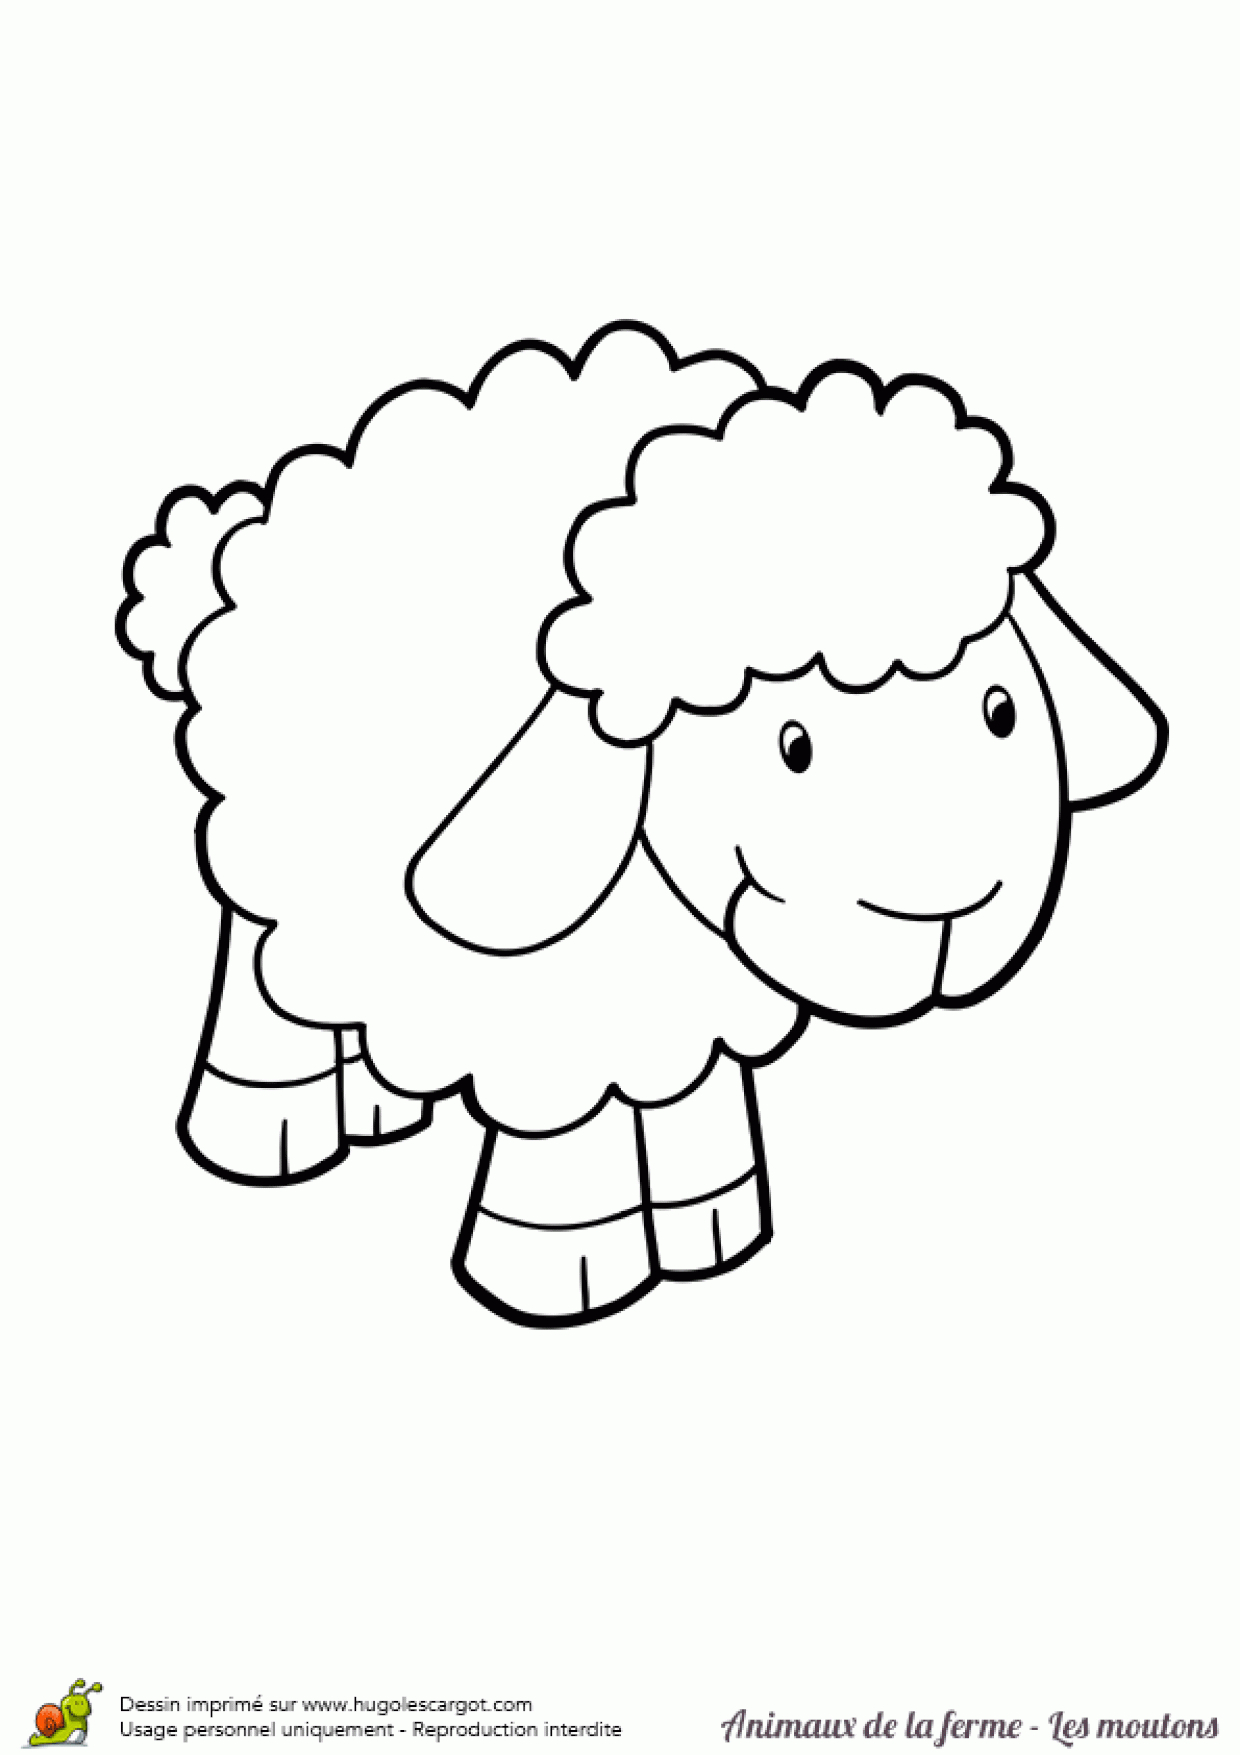 Coloriage Animaux De La Ferme Bebe Mouton Sur Hugolescargot dedans Dessin Animaux De La Ferme À Imprimer